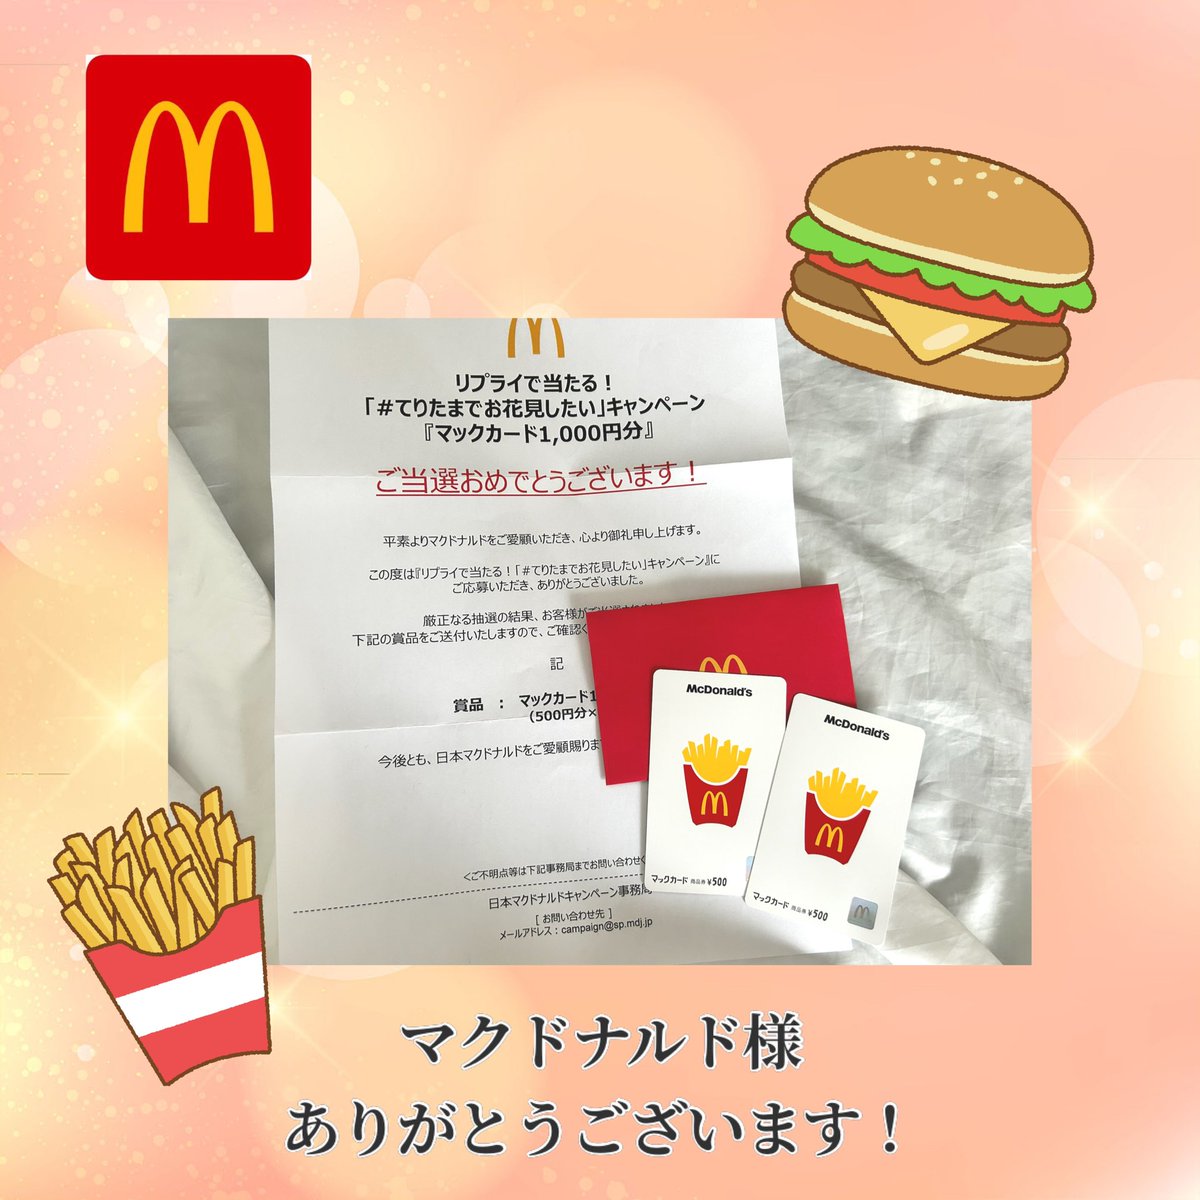 マクドナルド(@McDonaldsJapan )様よりリプライで当たる！「#てりたまでお花見したい」CPにて
 
✔️マックカード1000円分
が当選しました🎁

てりたま、美味しすぎて😊✨
また食べたいです☺️
そして今はチキンタツタ。大盛り上がり中です！逃さず食べに行く！

ありがとうございました！

#当選報告